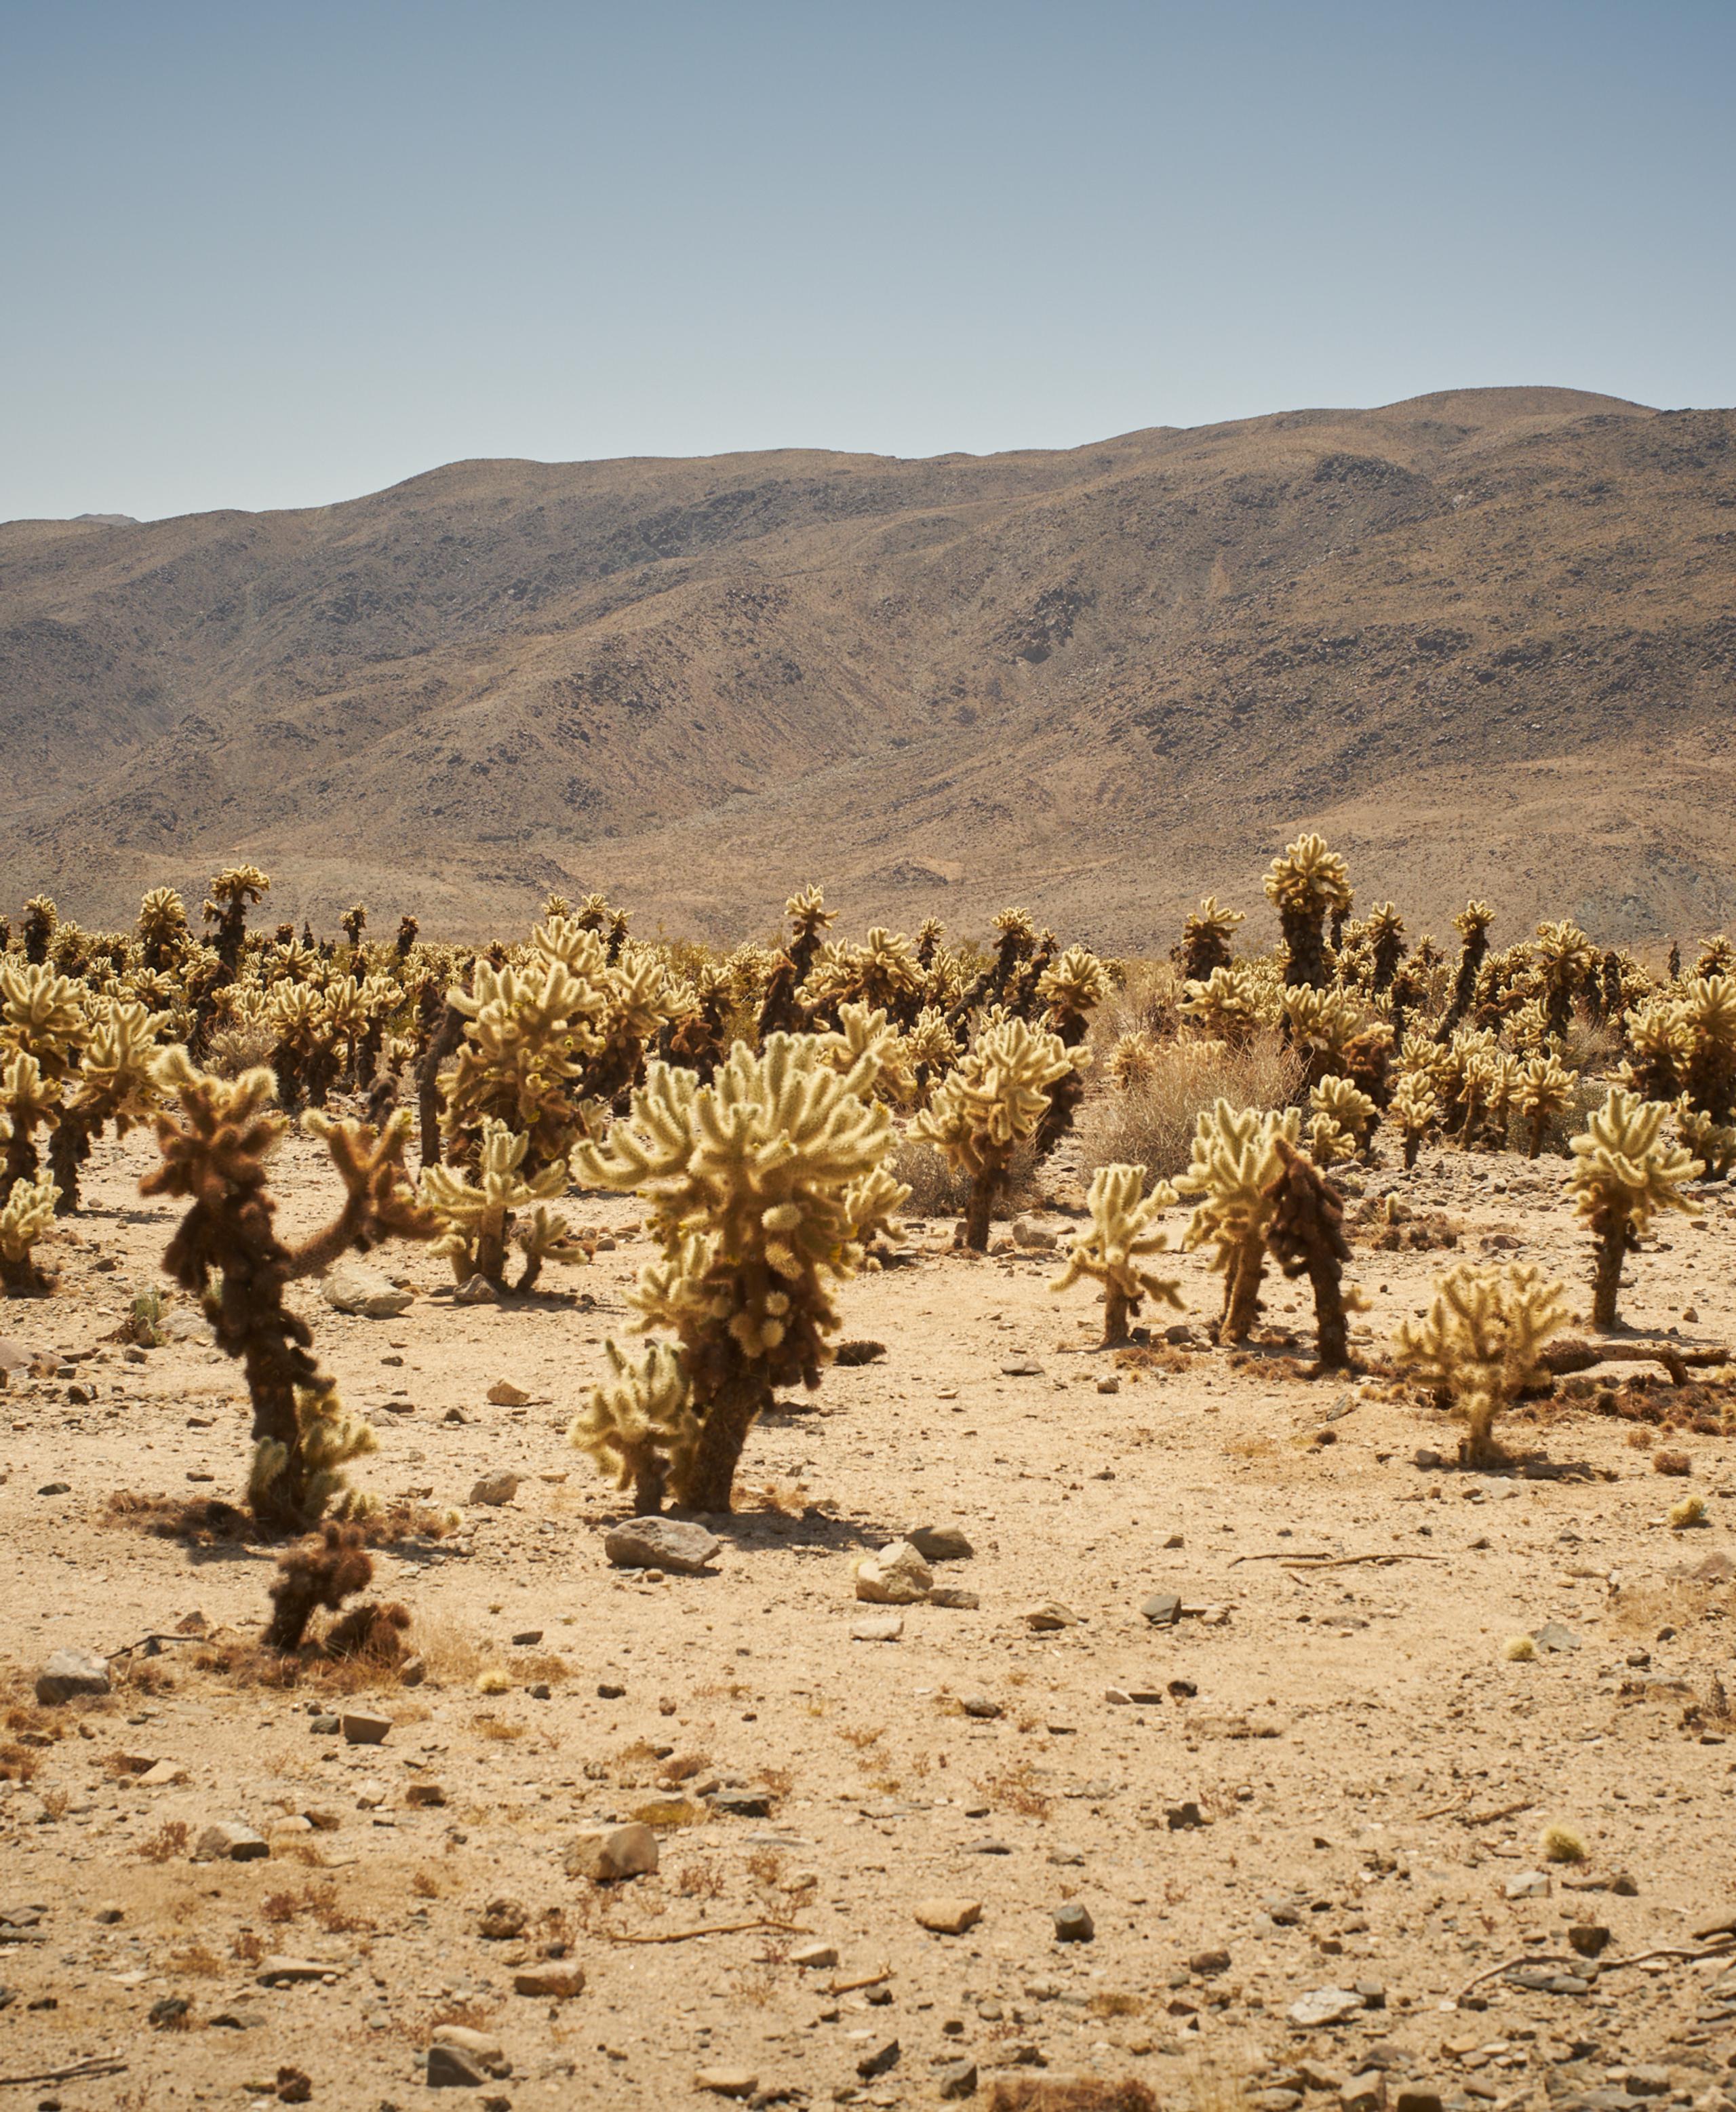 Joshua trees in desert landscape